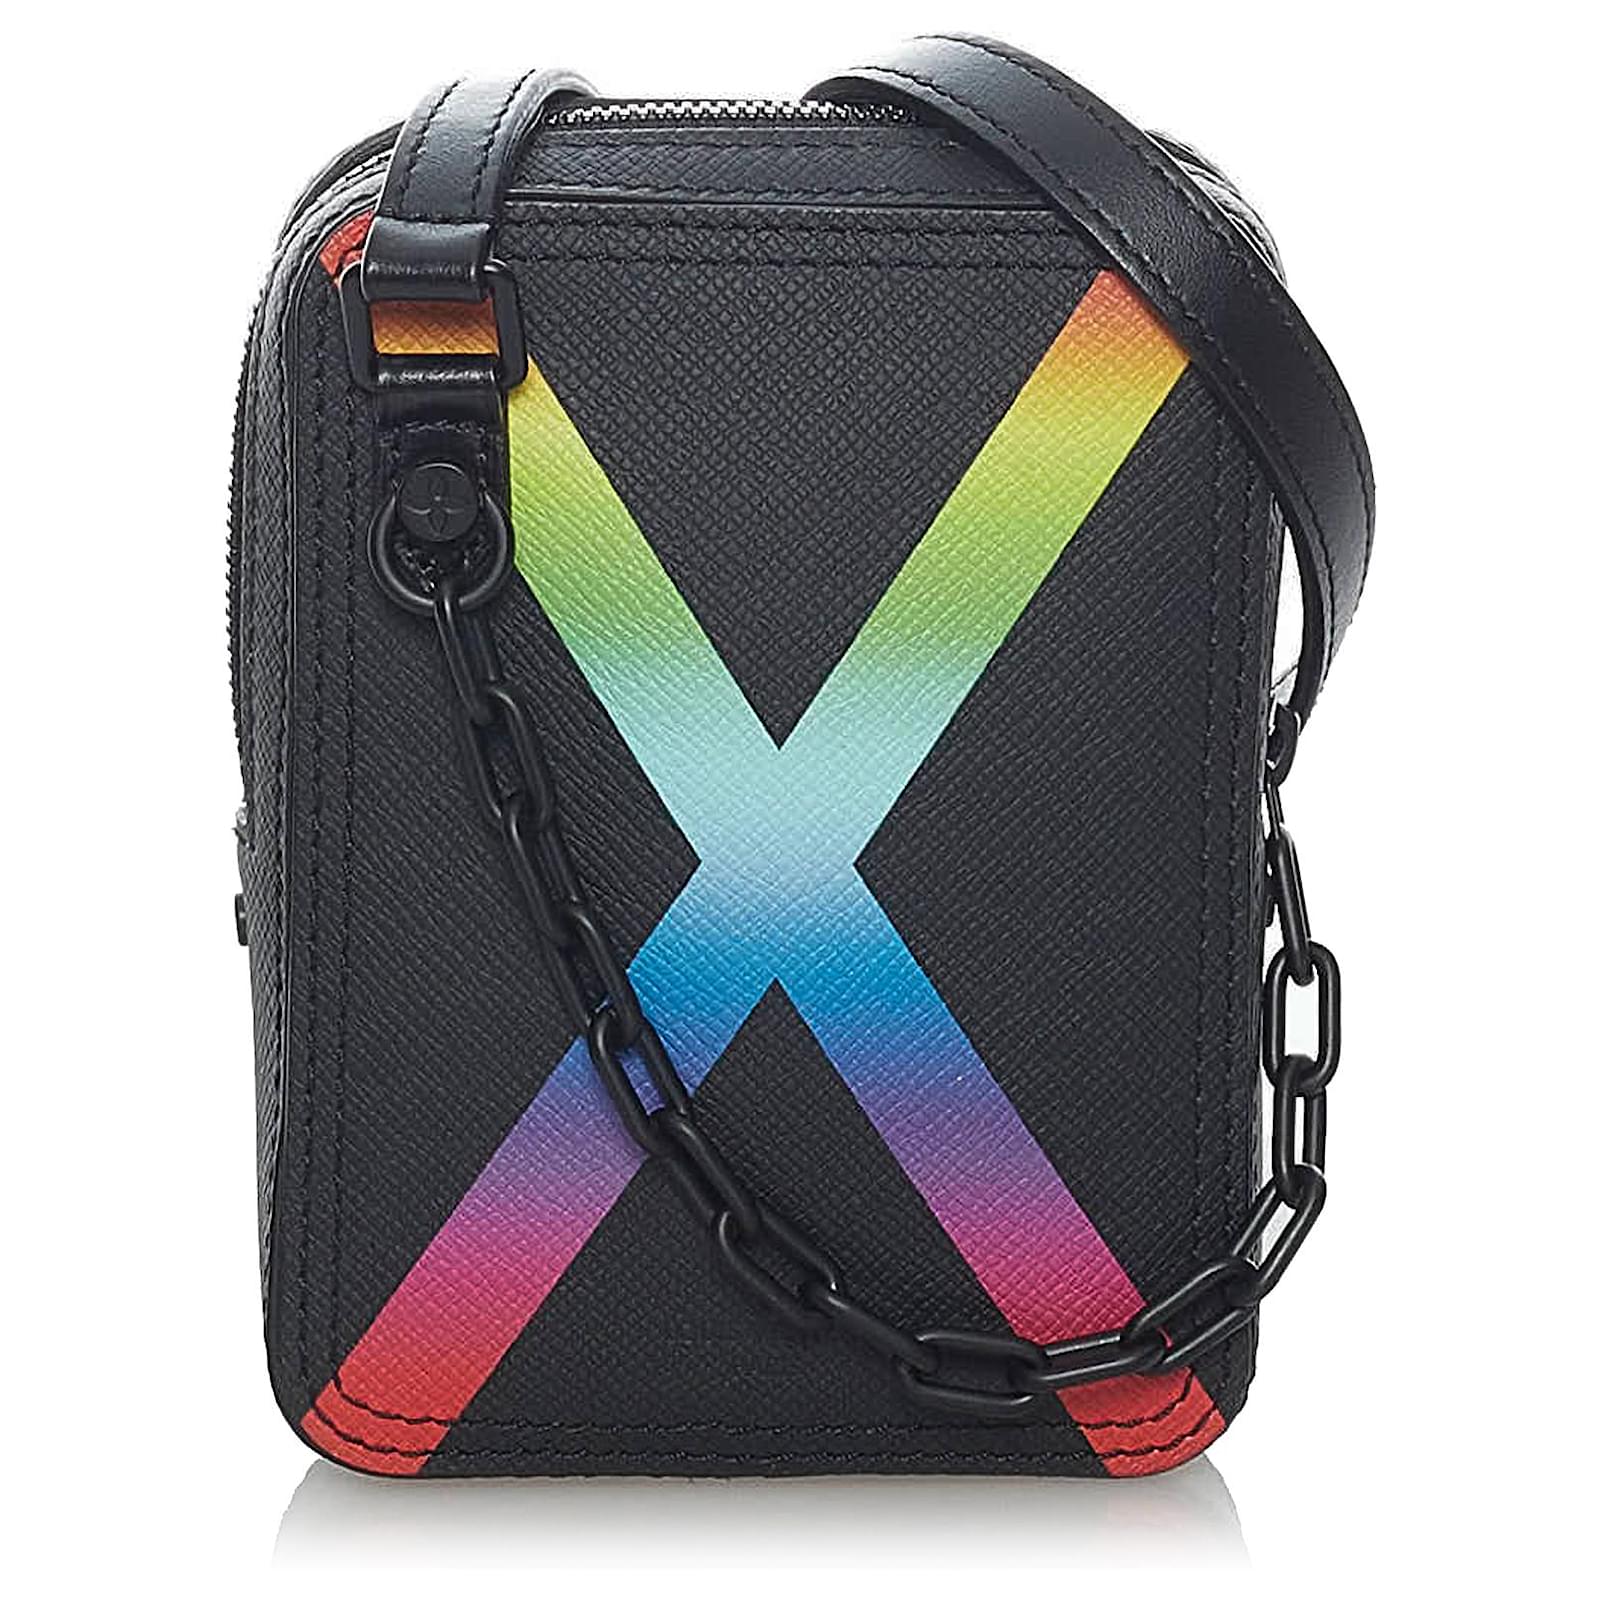 Louis Vuitton Bag Rainbow